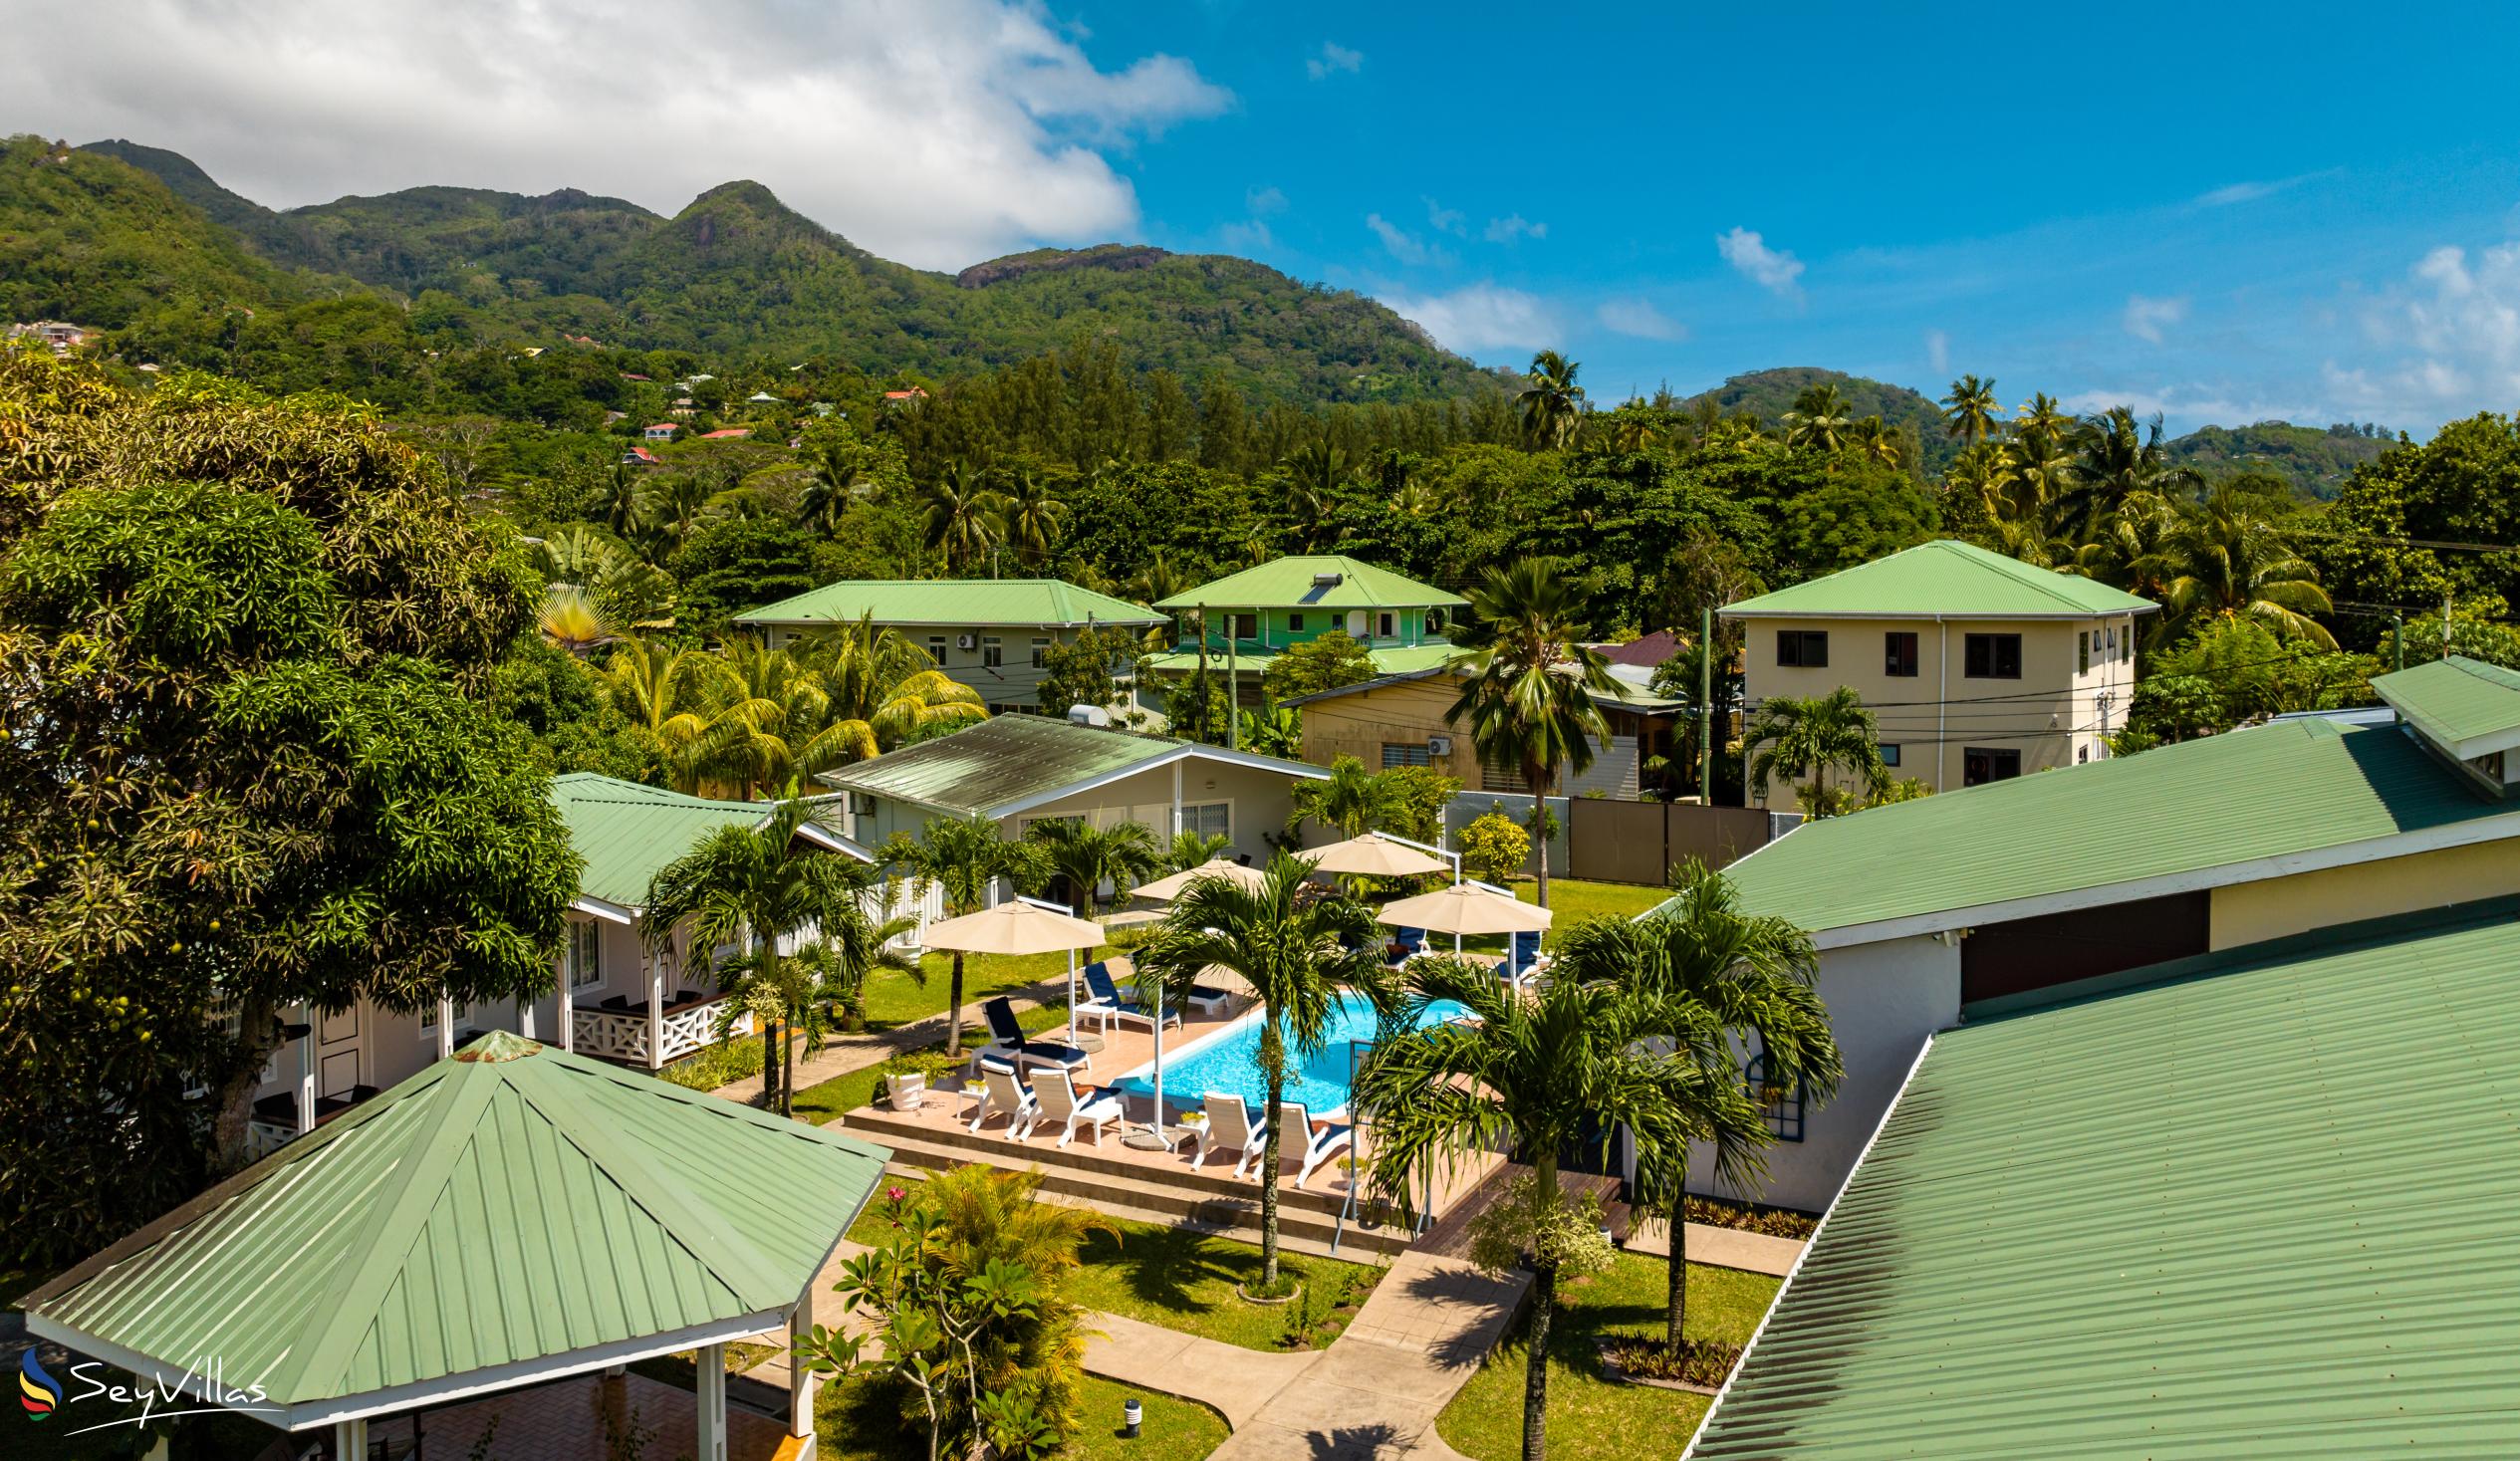 Photo 9: Hotel La Roussette - Outdoor area - Mahé (Seychelles)